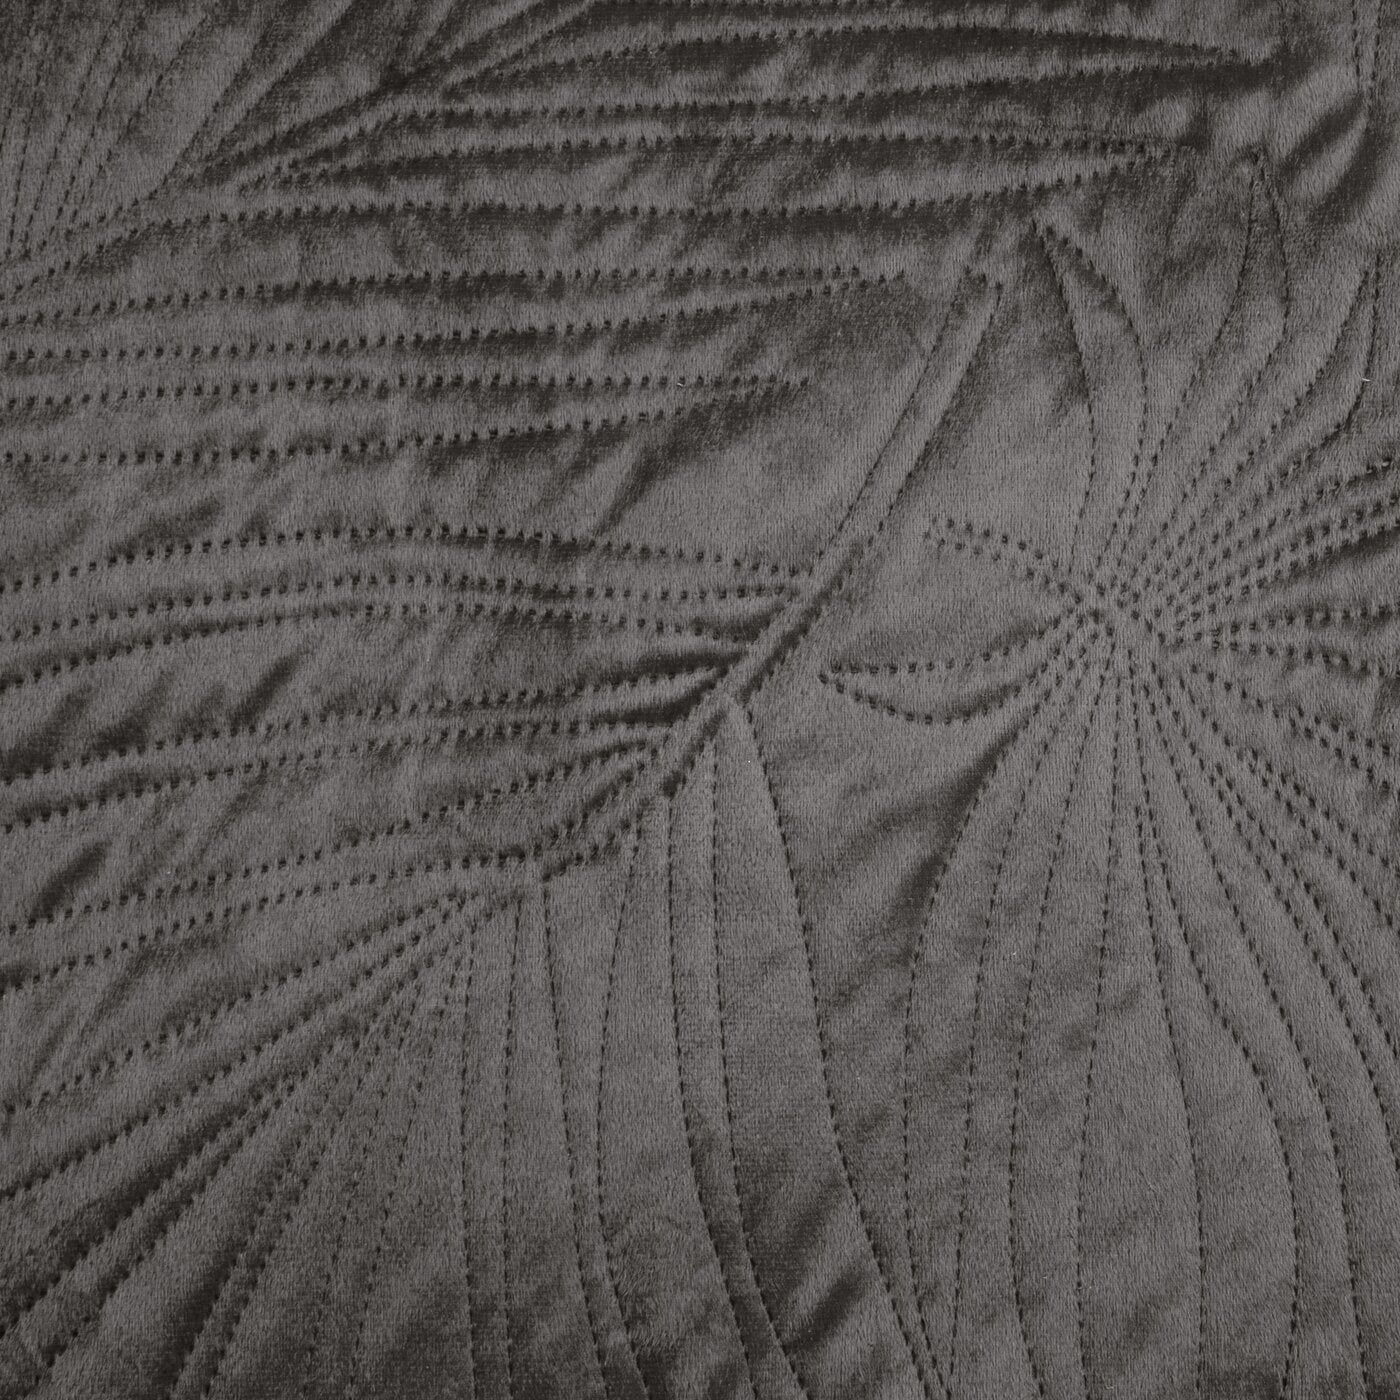 Cuvertură de Pat din catifea matlasată prin presare la cald cu model de frunze grafit LUIZ Perdele de Poveste